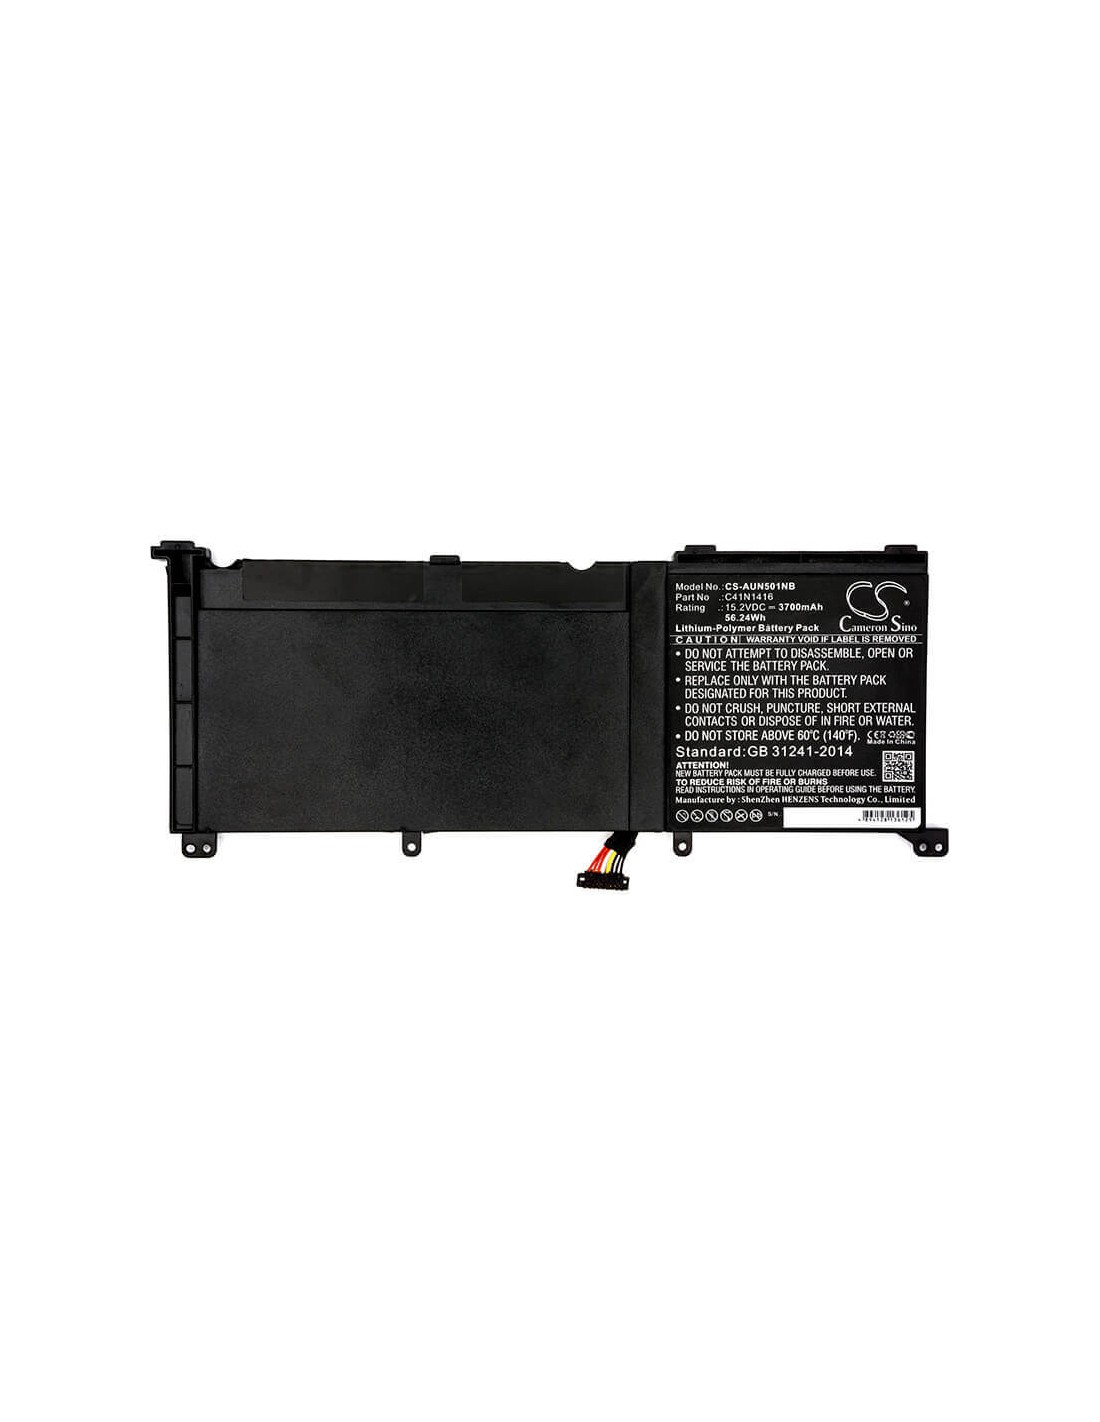 Battery for Asus N501jw-1a, G60jw4720, N501jw-1b 15.2V, 3700mAh - 56.24Wh